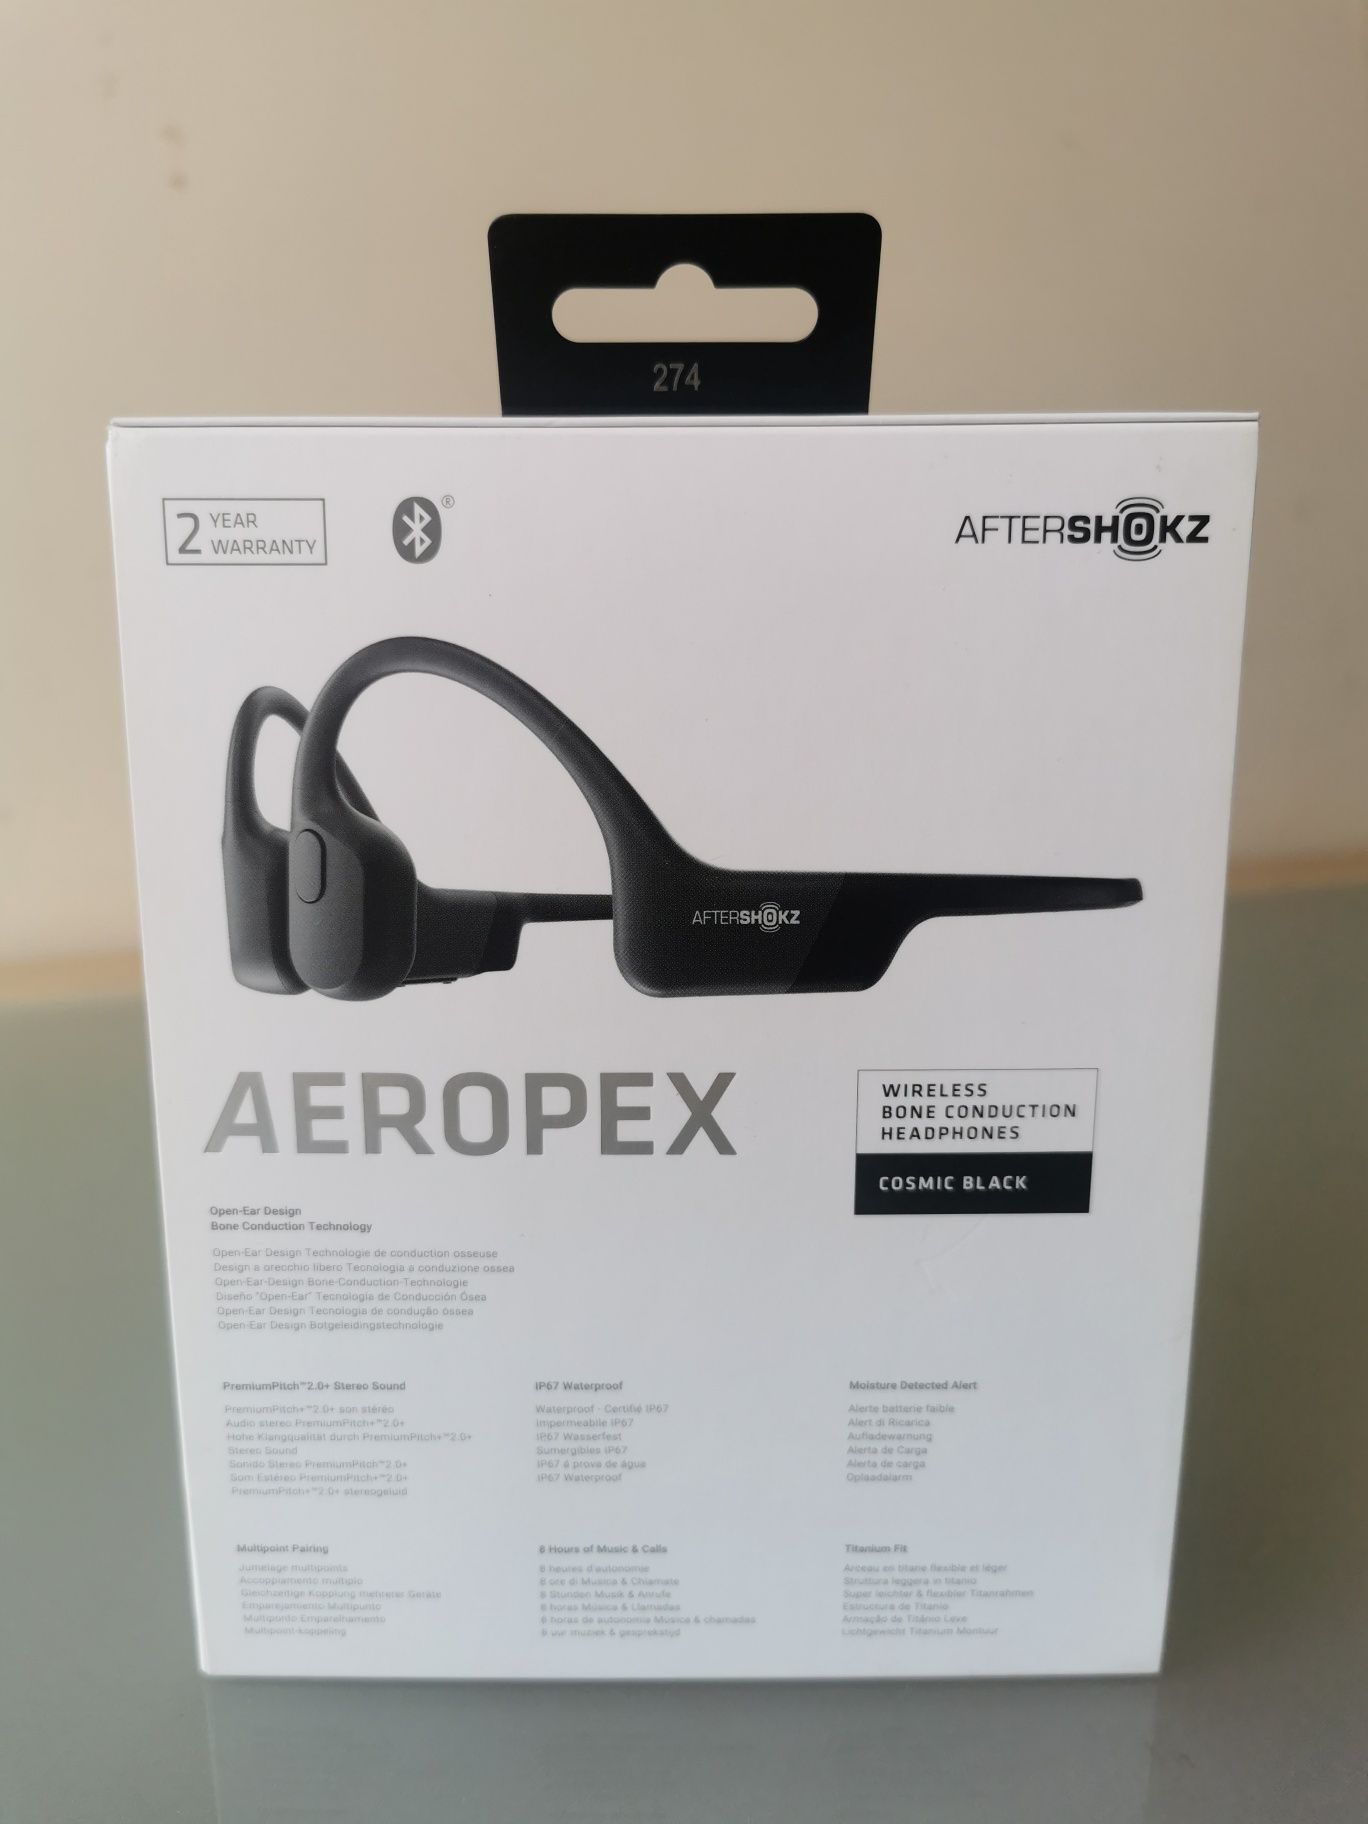 ORYGINALNE | Aftershokz® Aeropex | Słuchawki kostne |